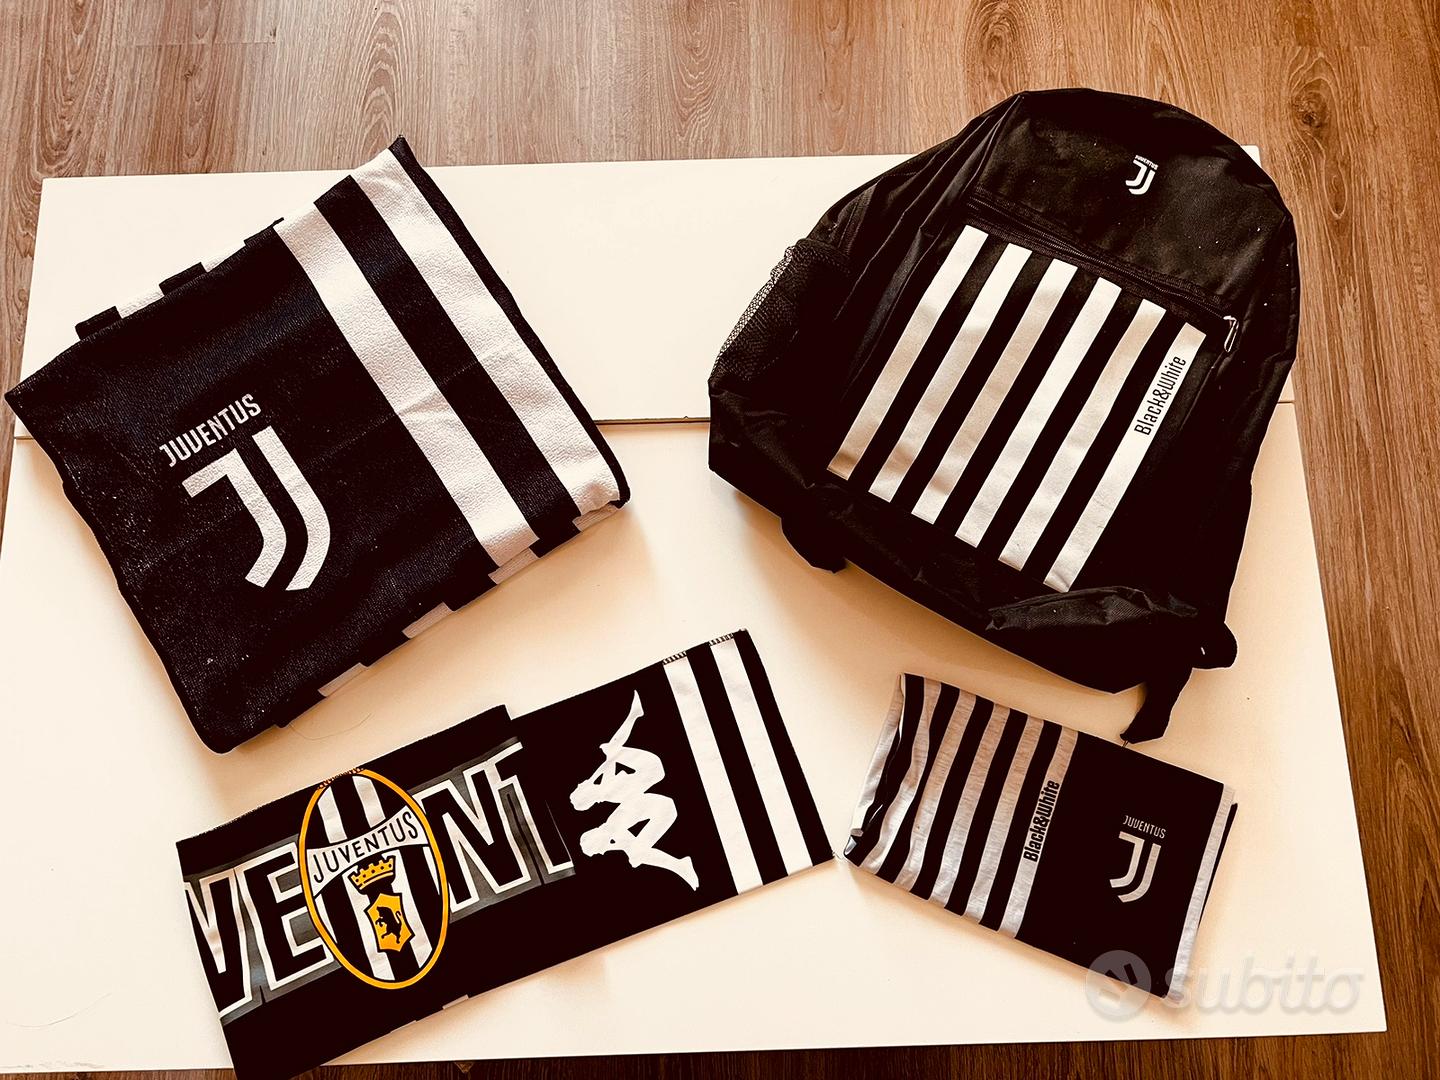 Juventus accessori - Sports In vendita a Pescara